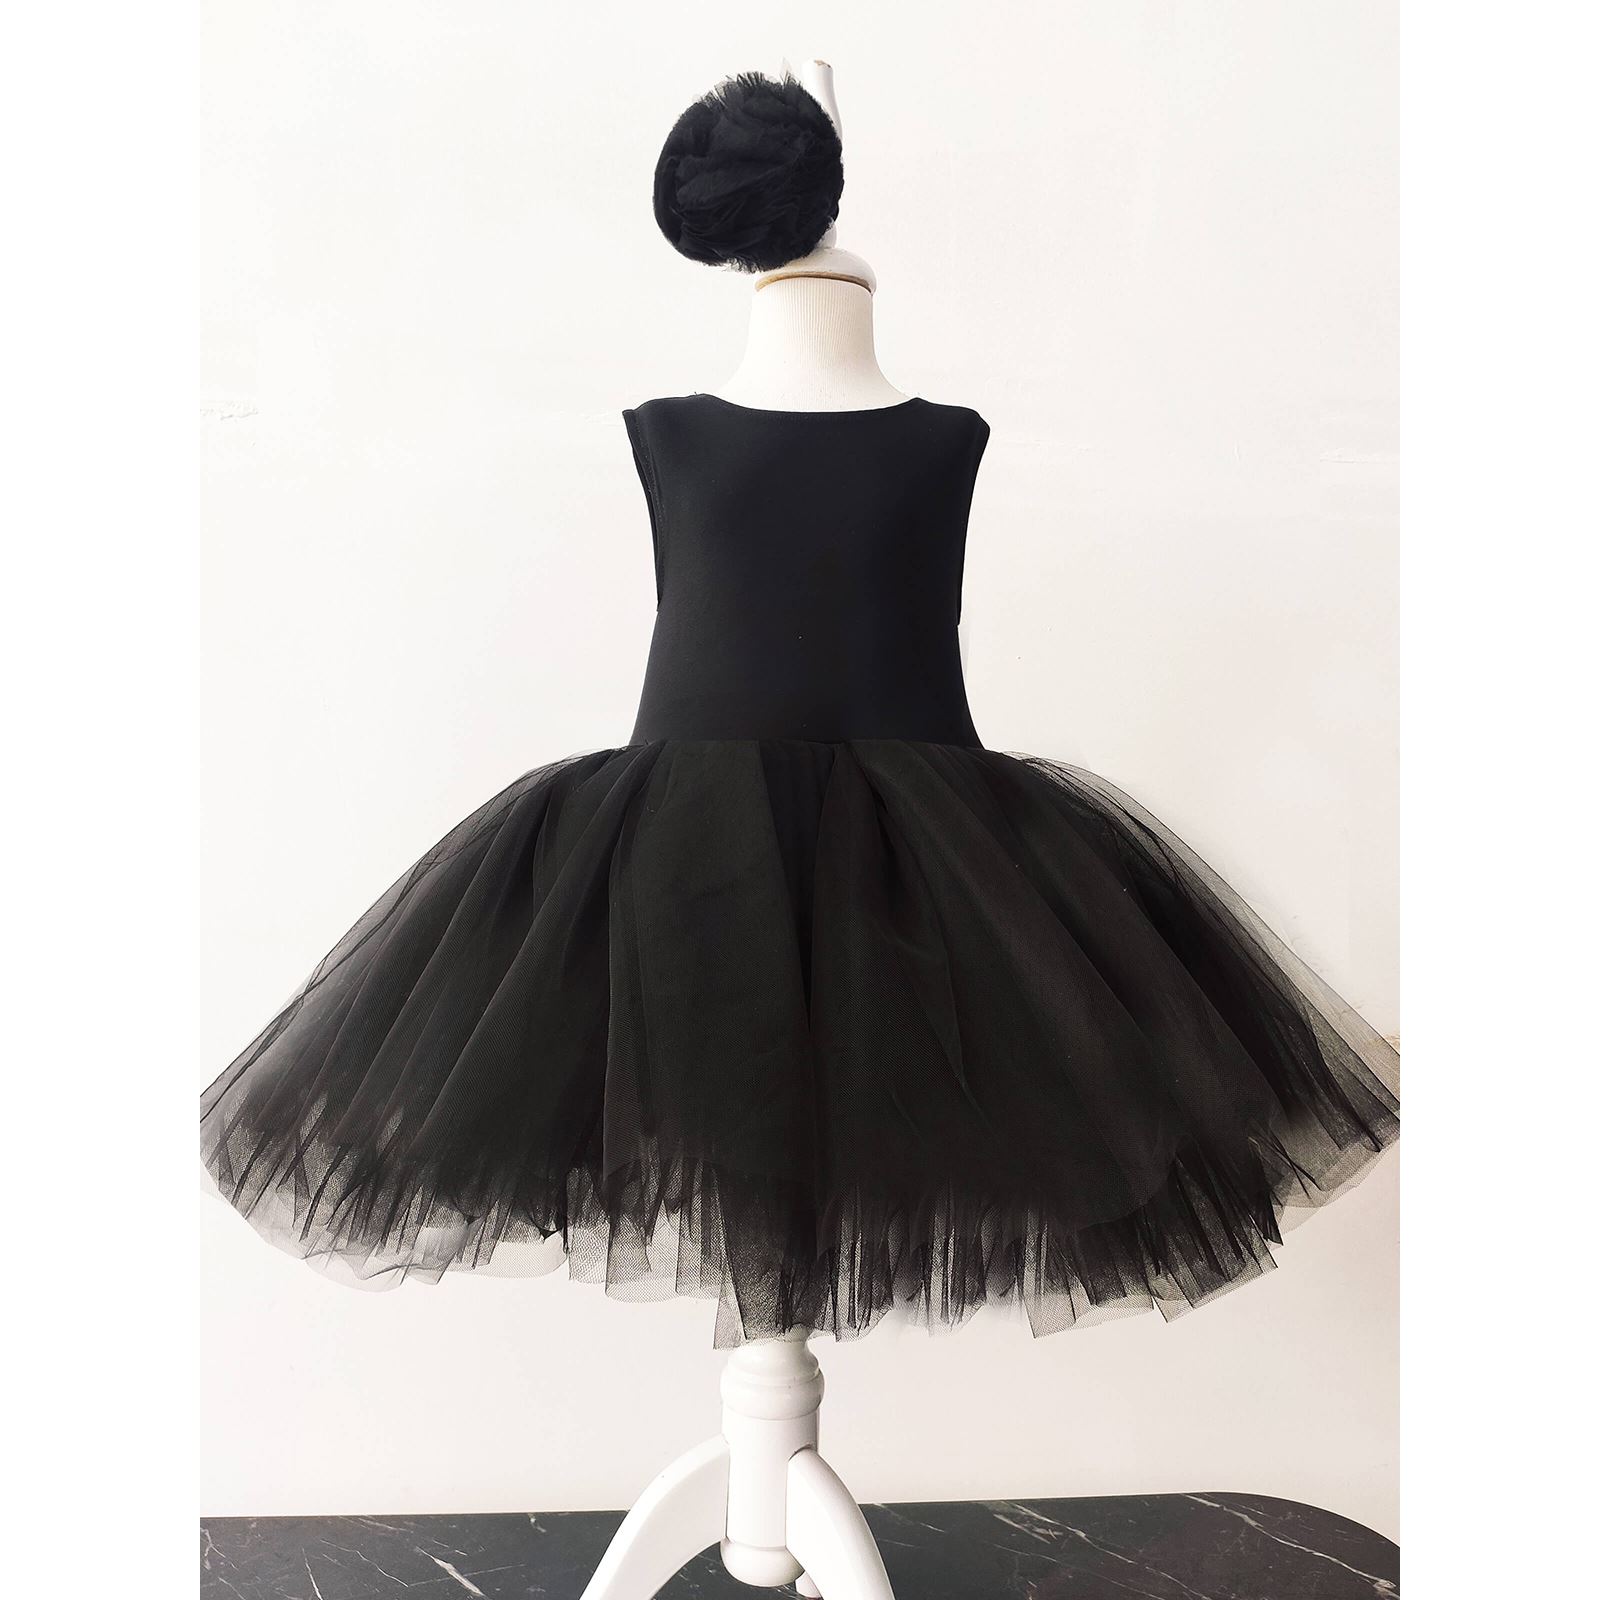 Shecco Babba Balerin Model Kız Çocuk Tütü Elbise, Kelebek Pelerin ve Bandana Takımı - Çocuk Abiye Elbise 6-10 Yaş Abiye Siyah